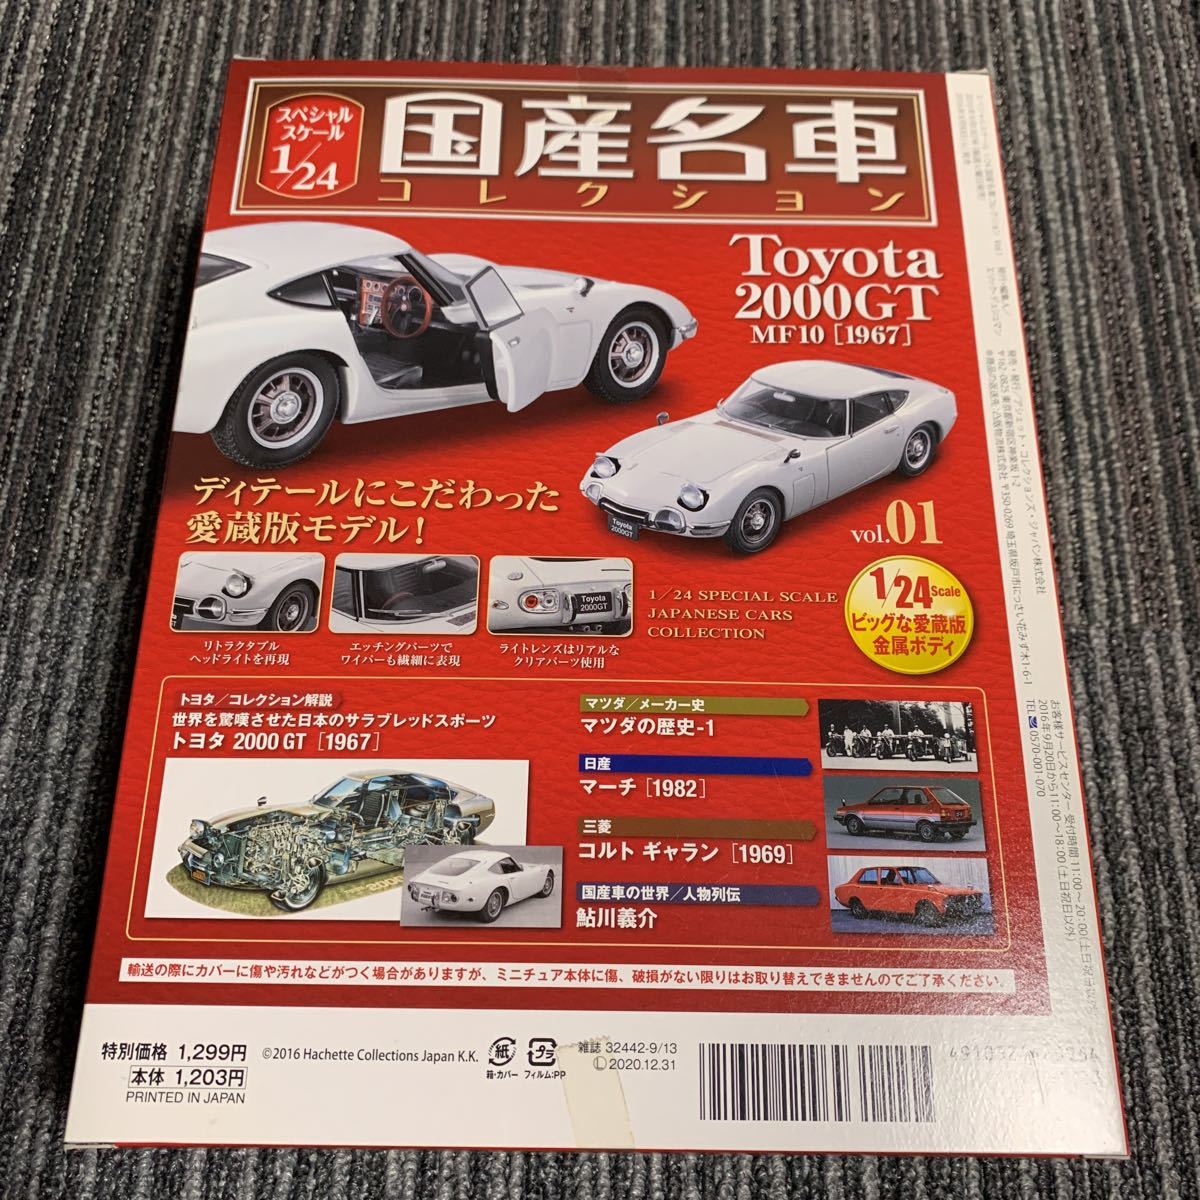 アシェット 1/24国産名車コレクション vol.01 創刊号 Toyota 2000GT 